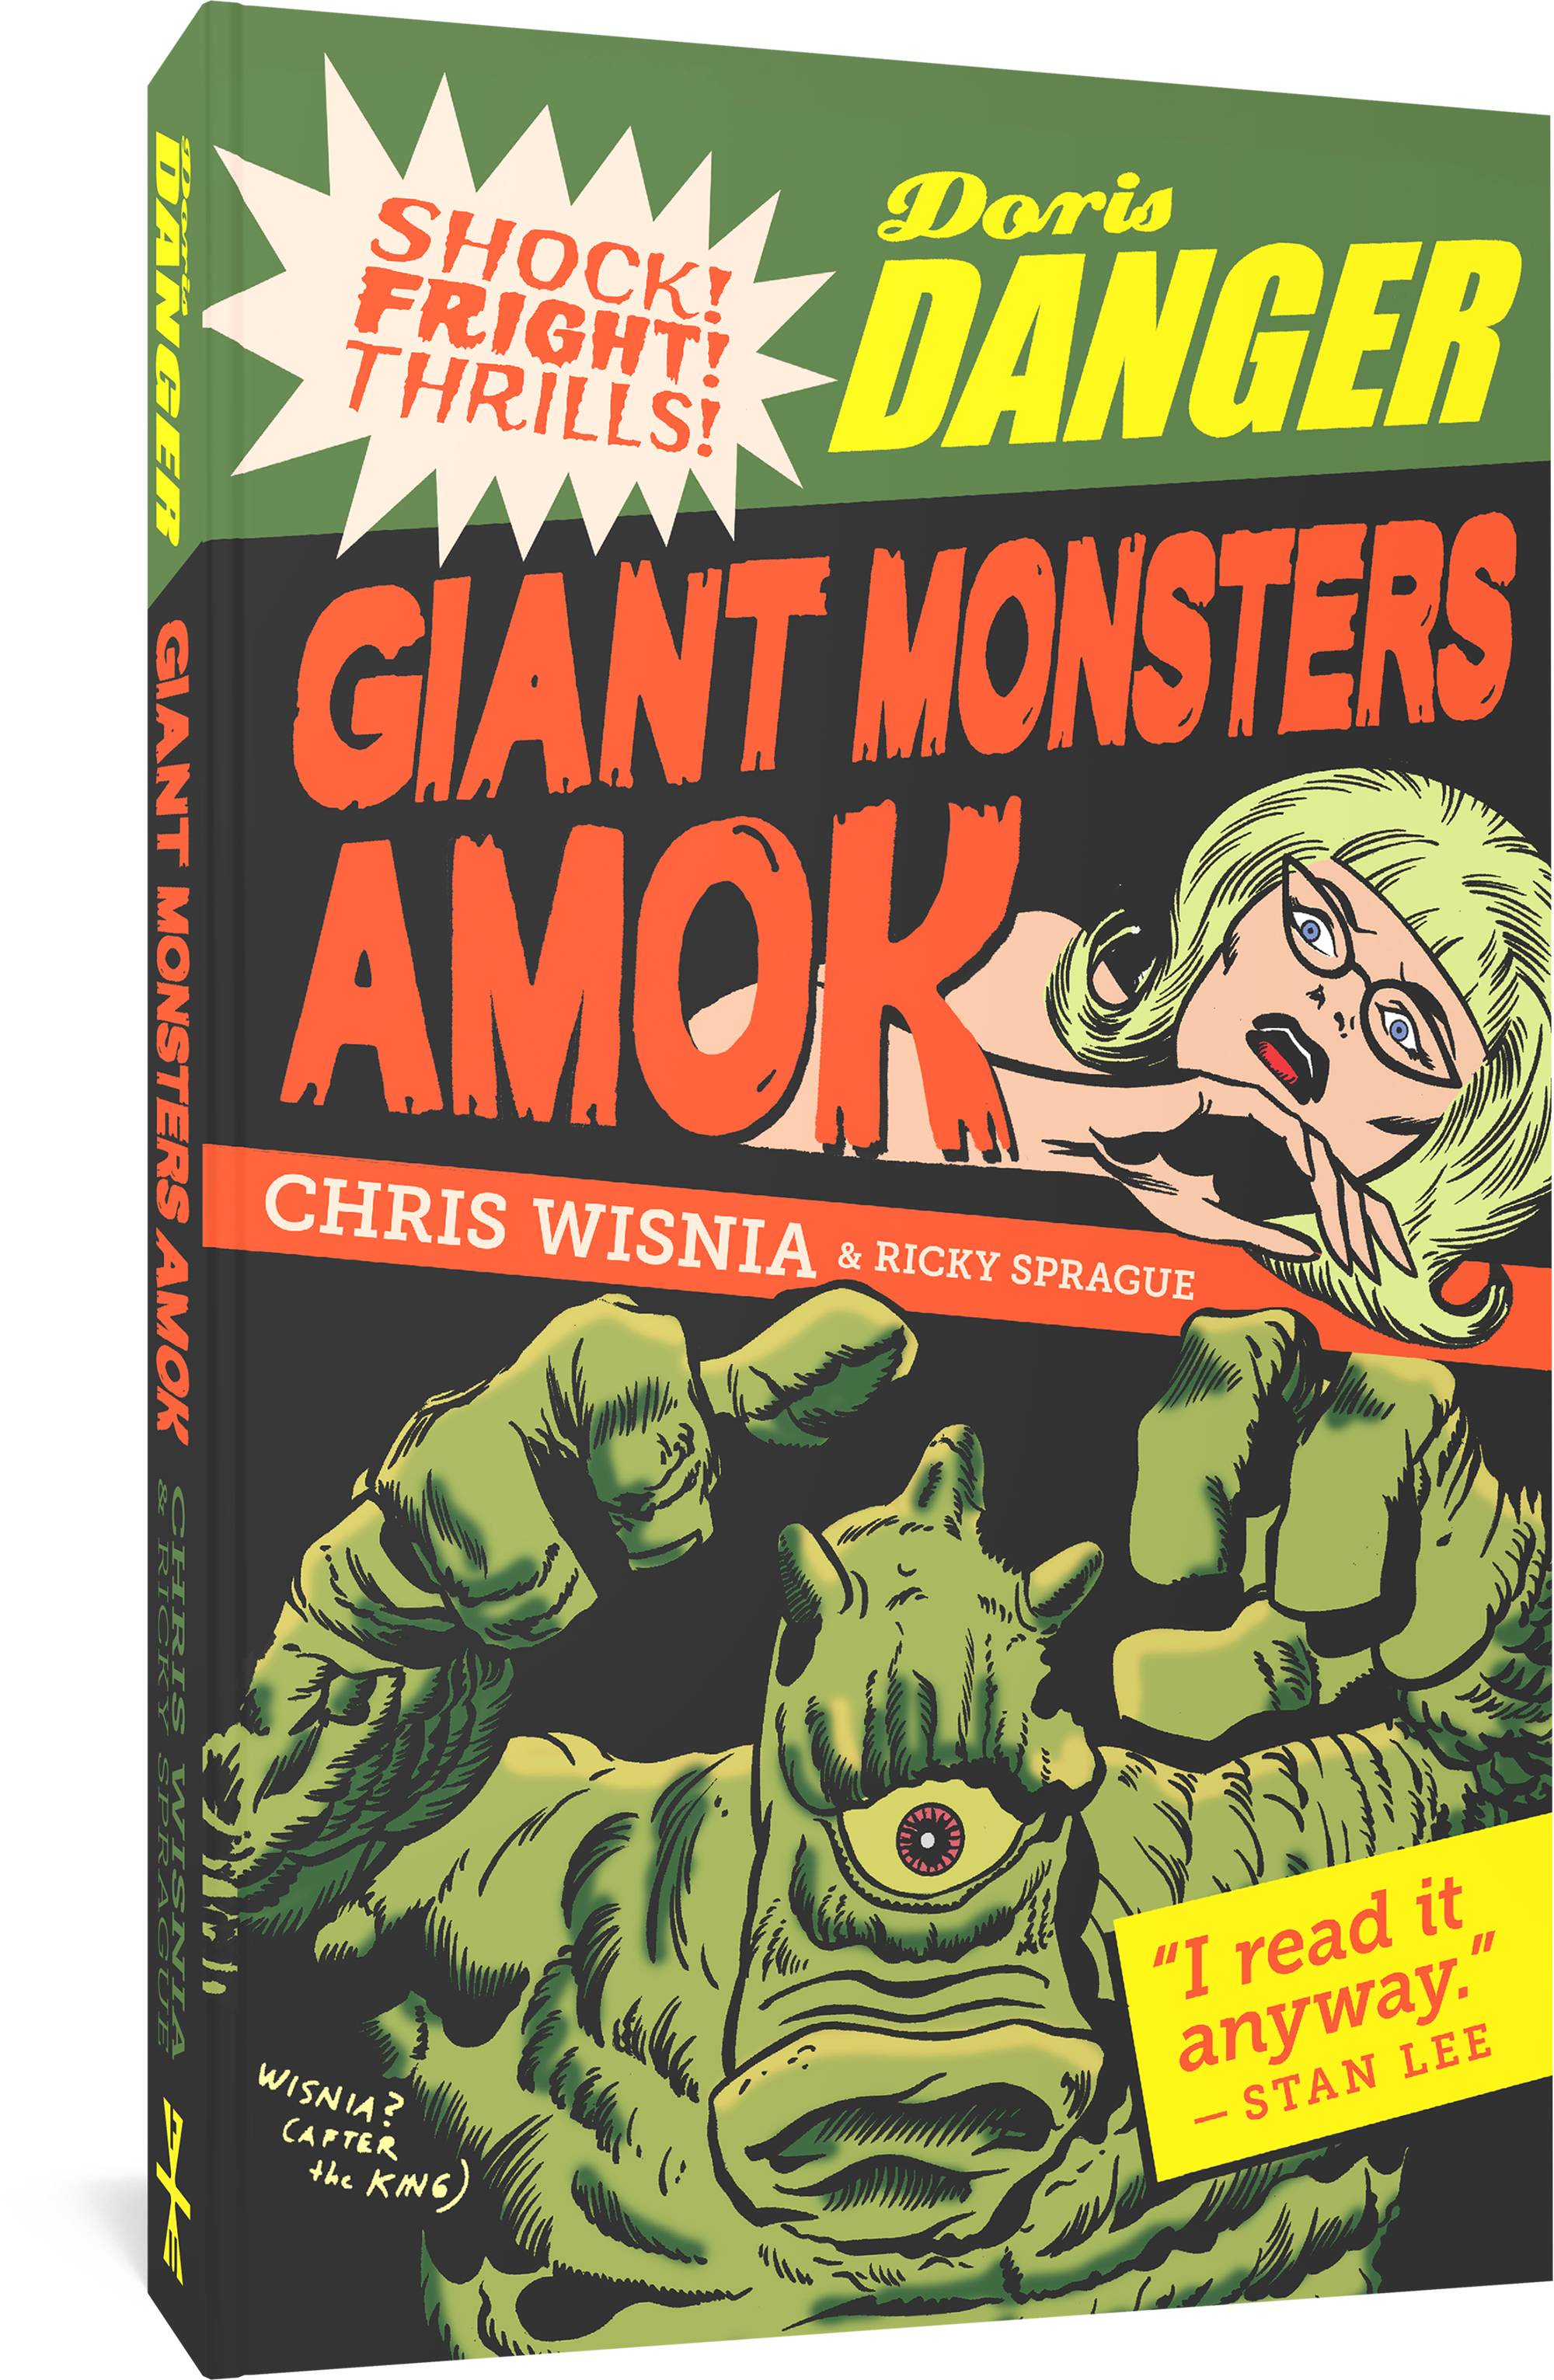 Fantagraphics Underground Doris Danger Giant Monsters Amok Graphic Novel